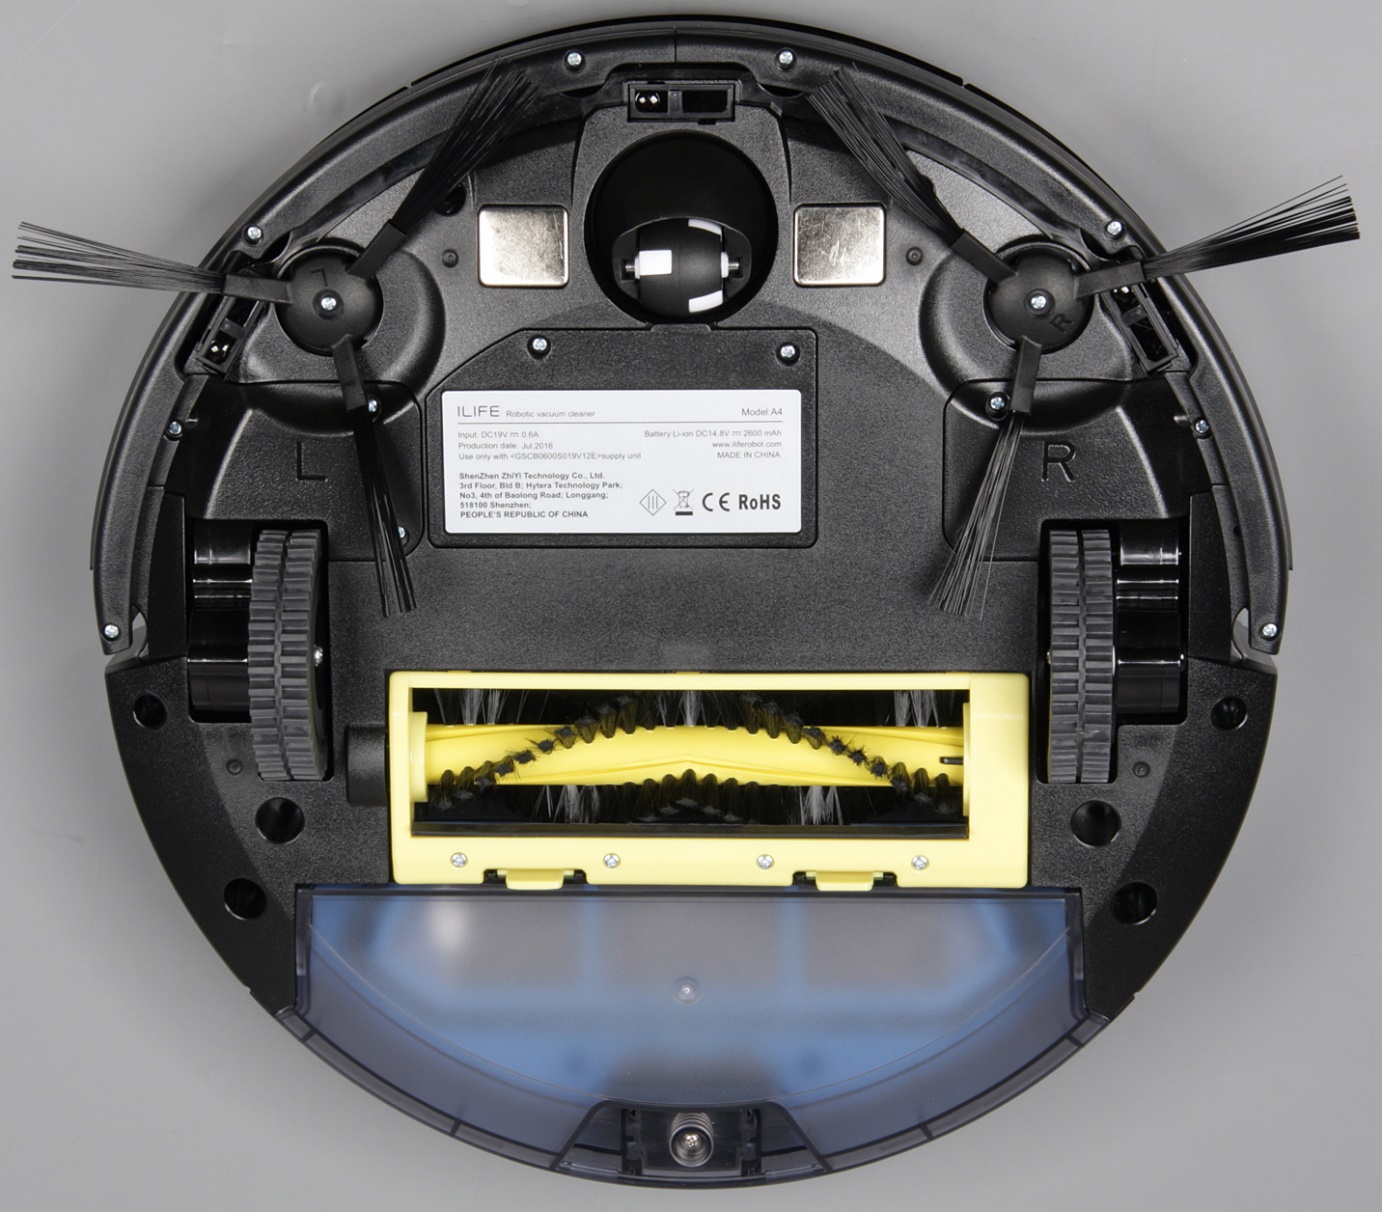 Round robotic vacuum cleaner bottom